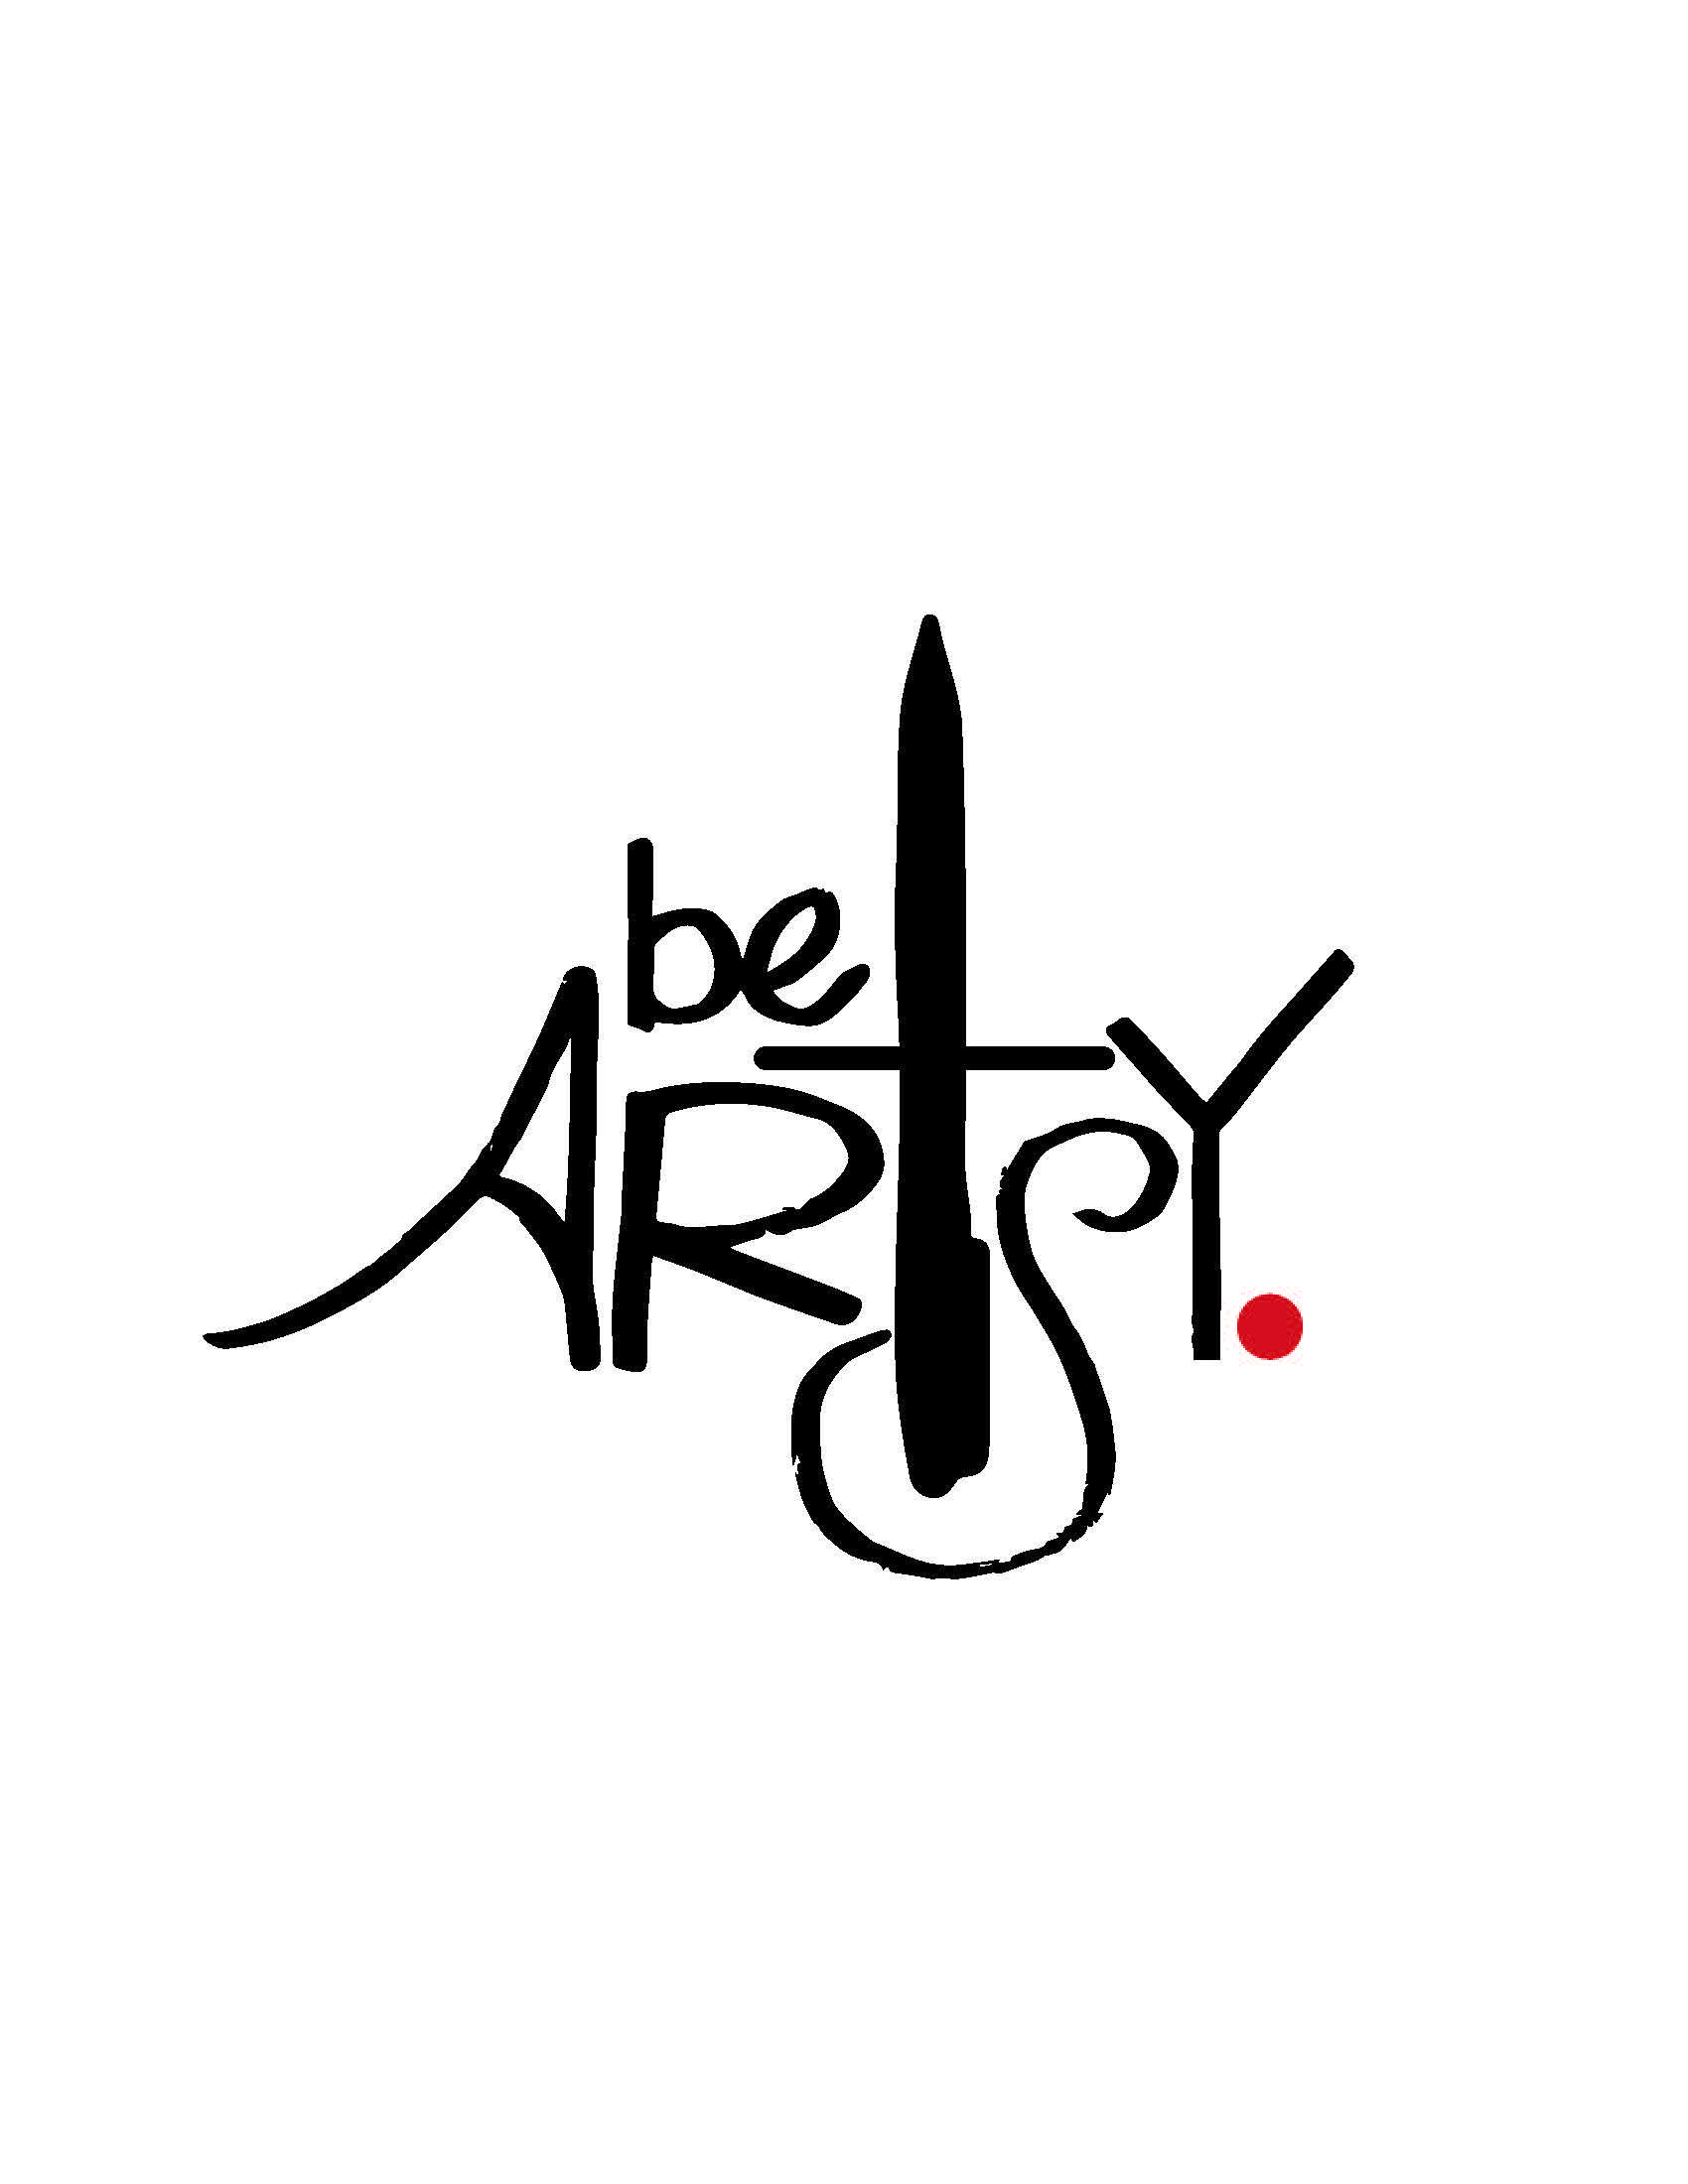 Artsy Logo - May